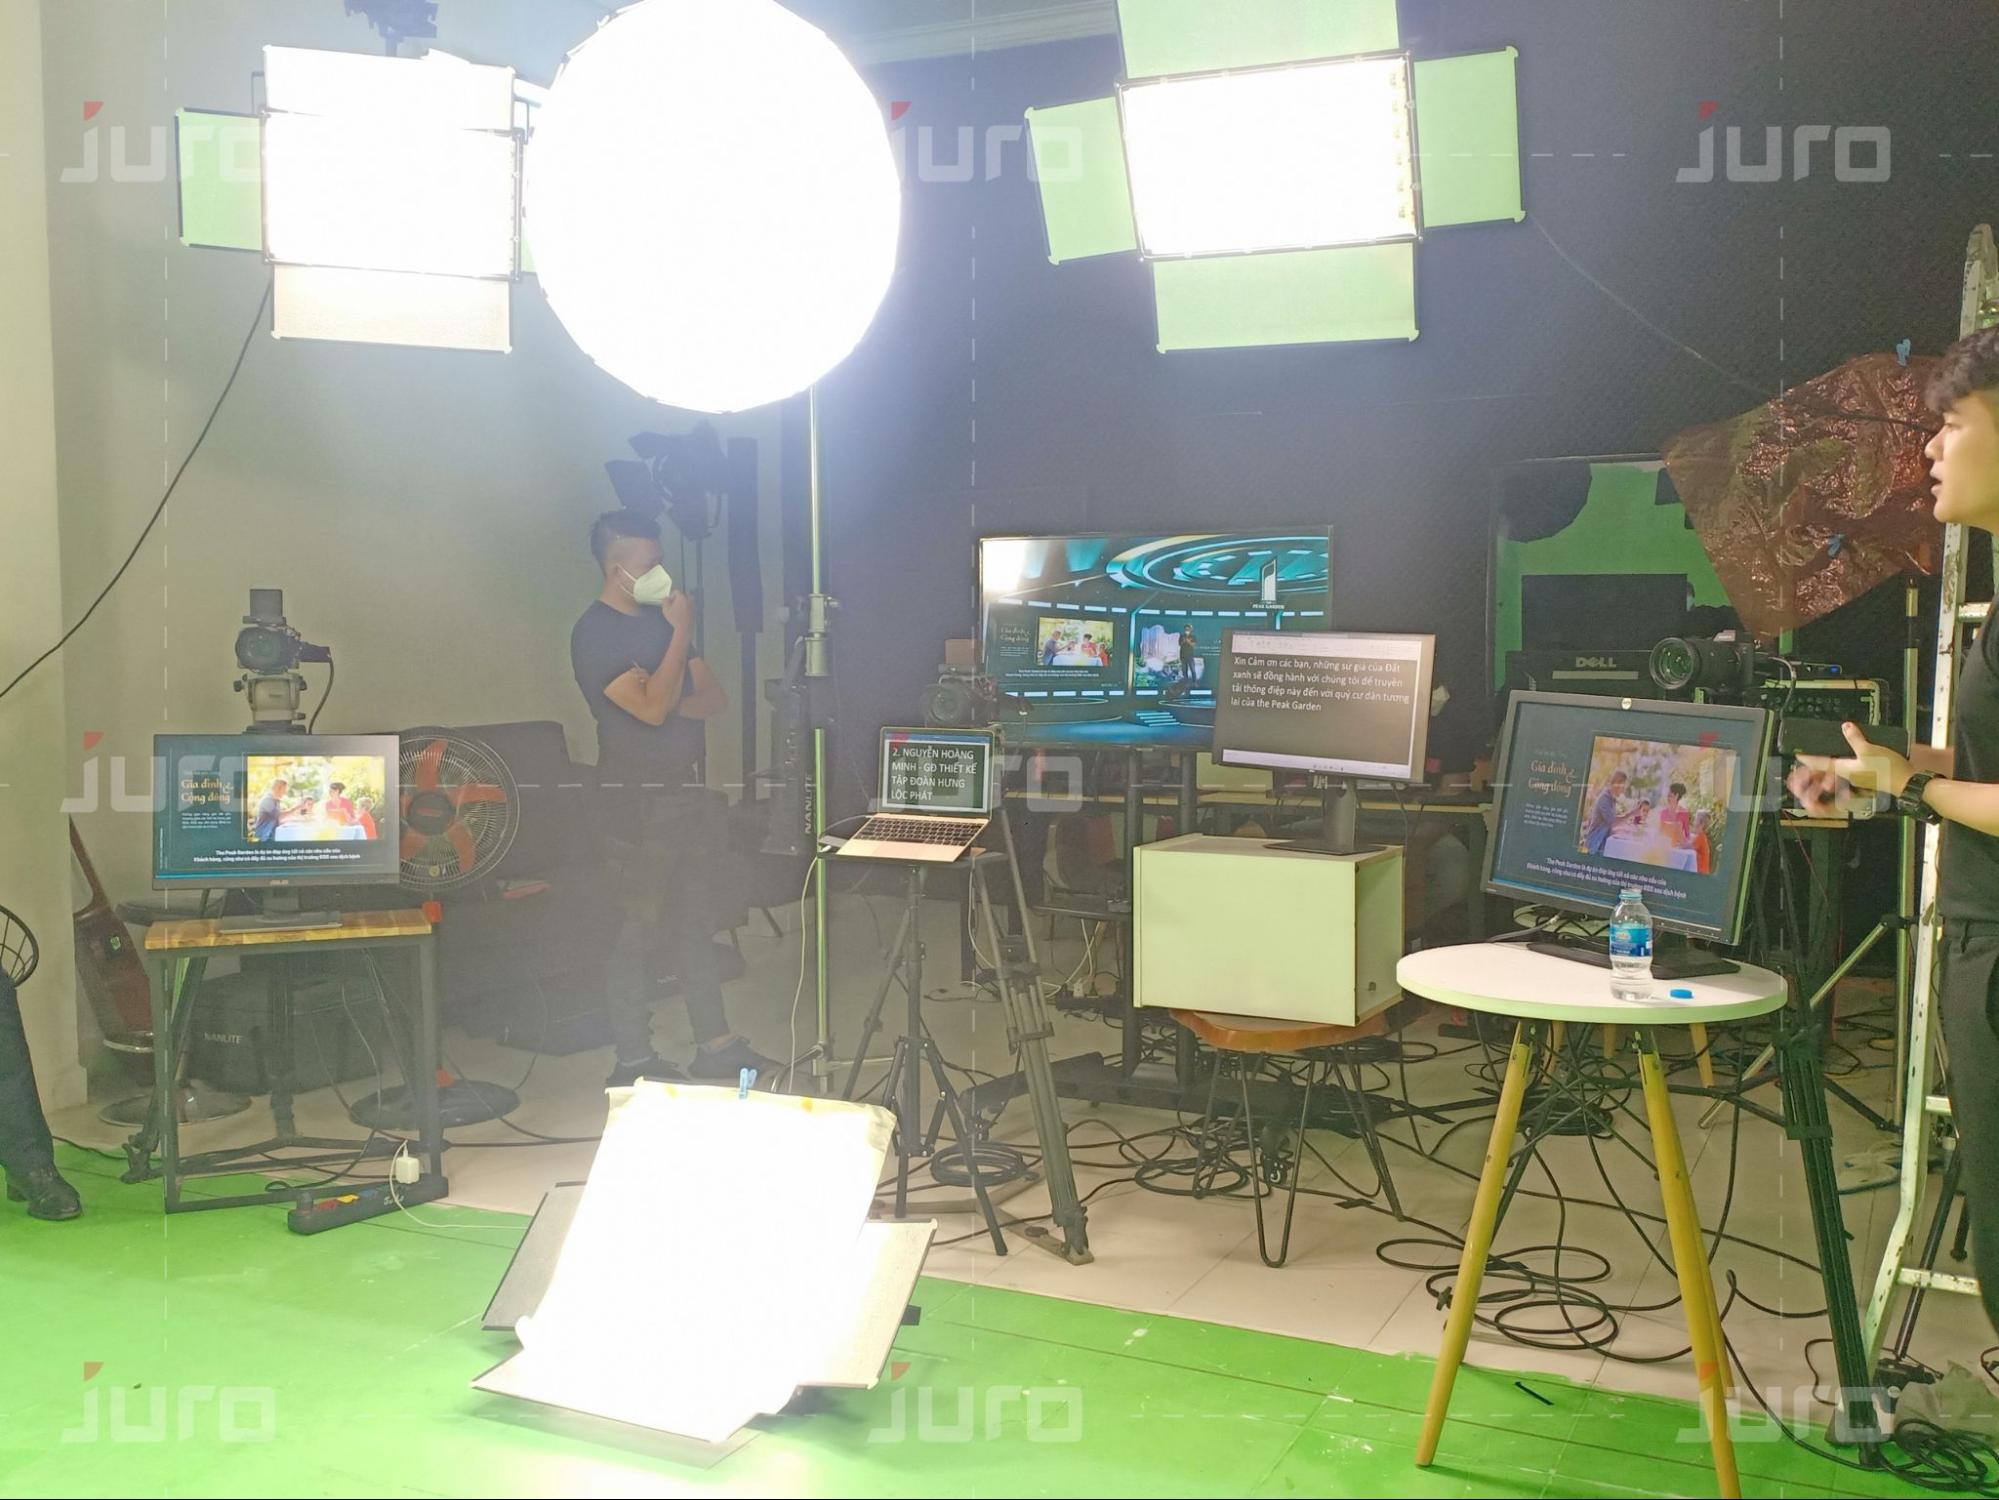 đội ngũ truyền thông sự kiện online Juro